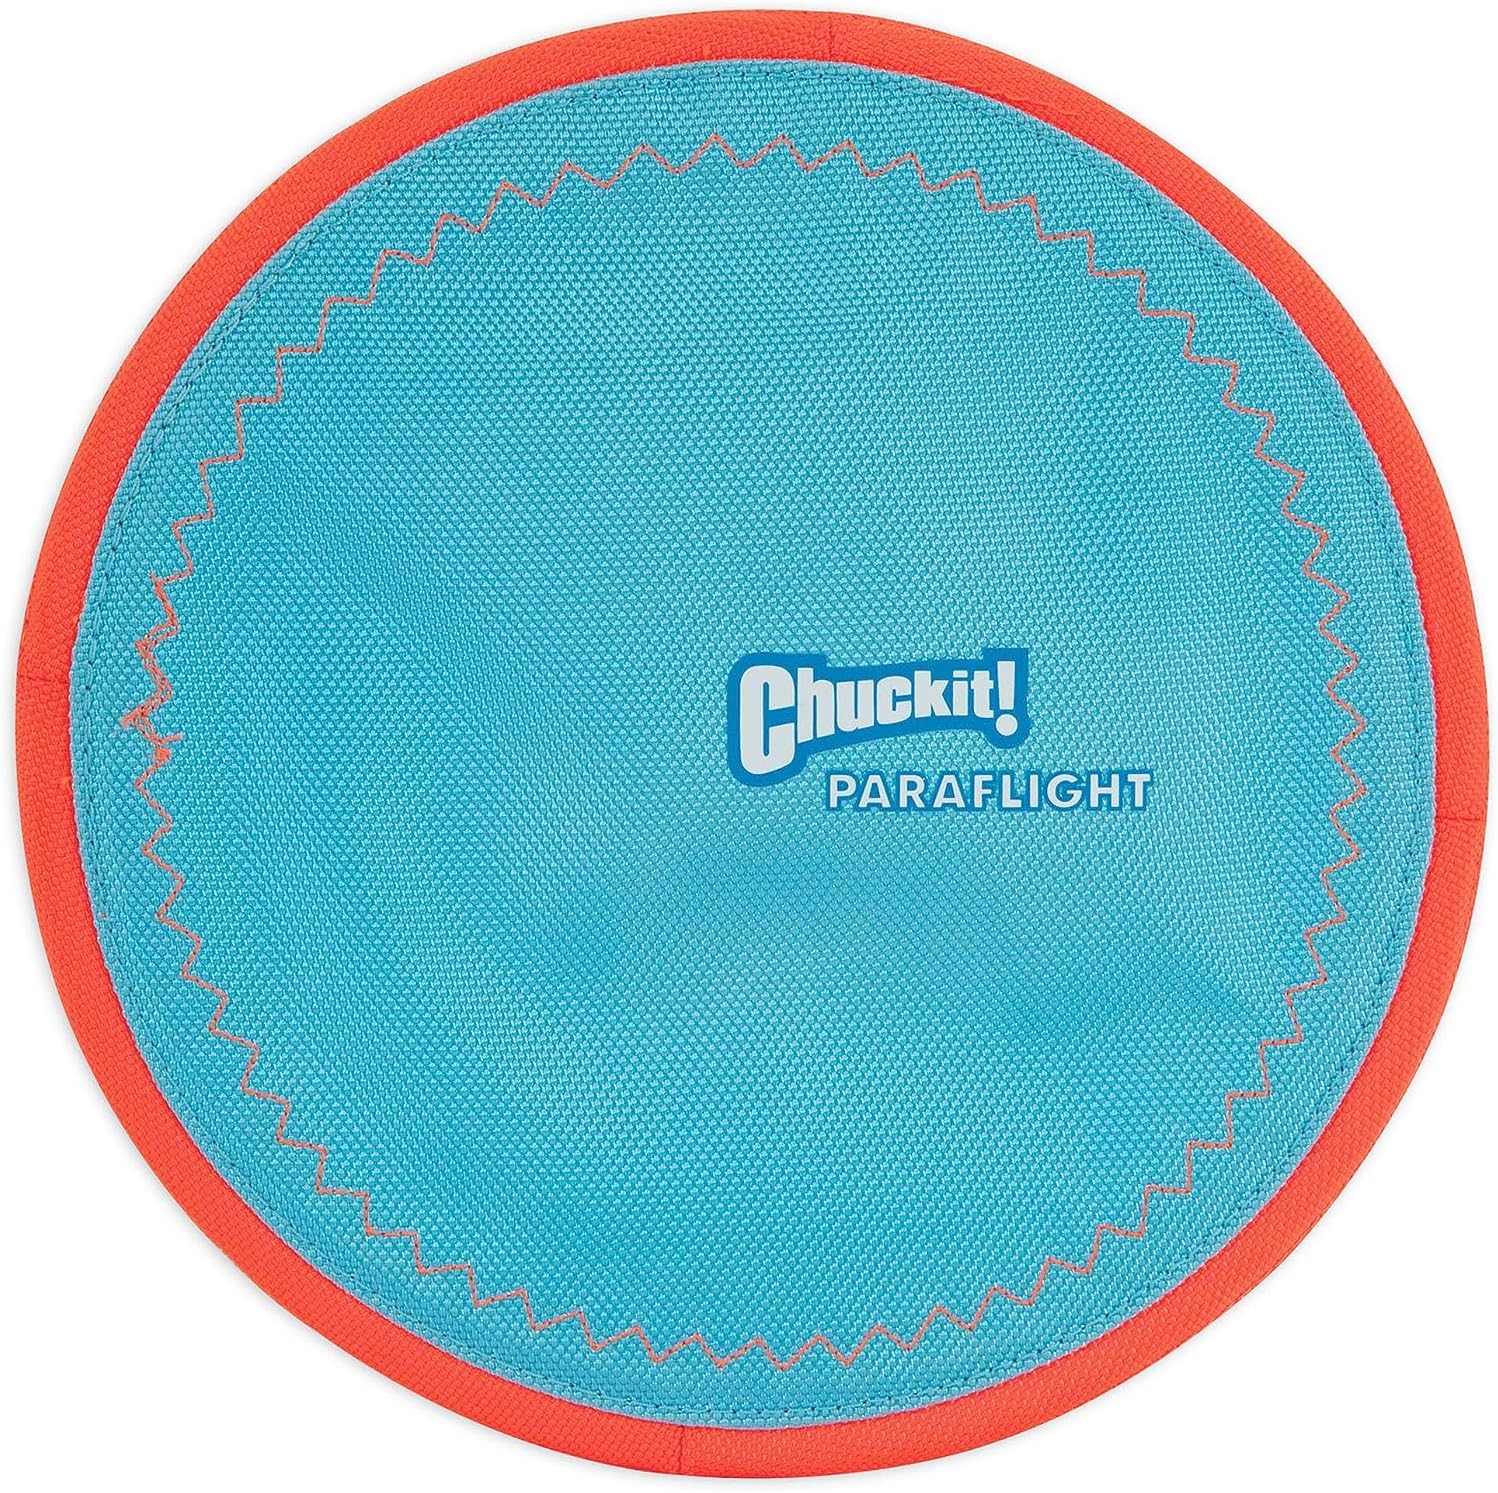 ChuckIt! Paraflight Flying Disc Dog Toy Large (Orange & Blue) $4 + Free Shipping